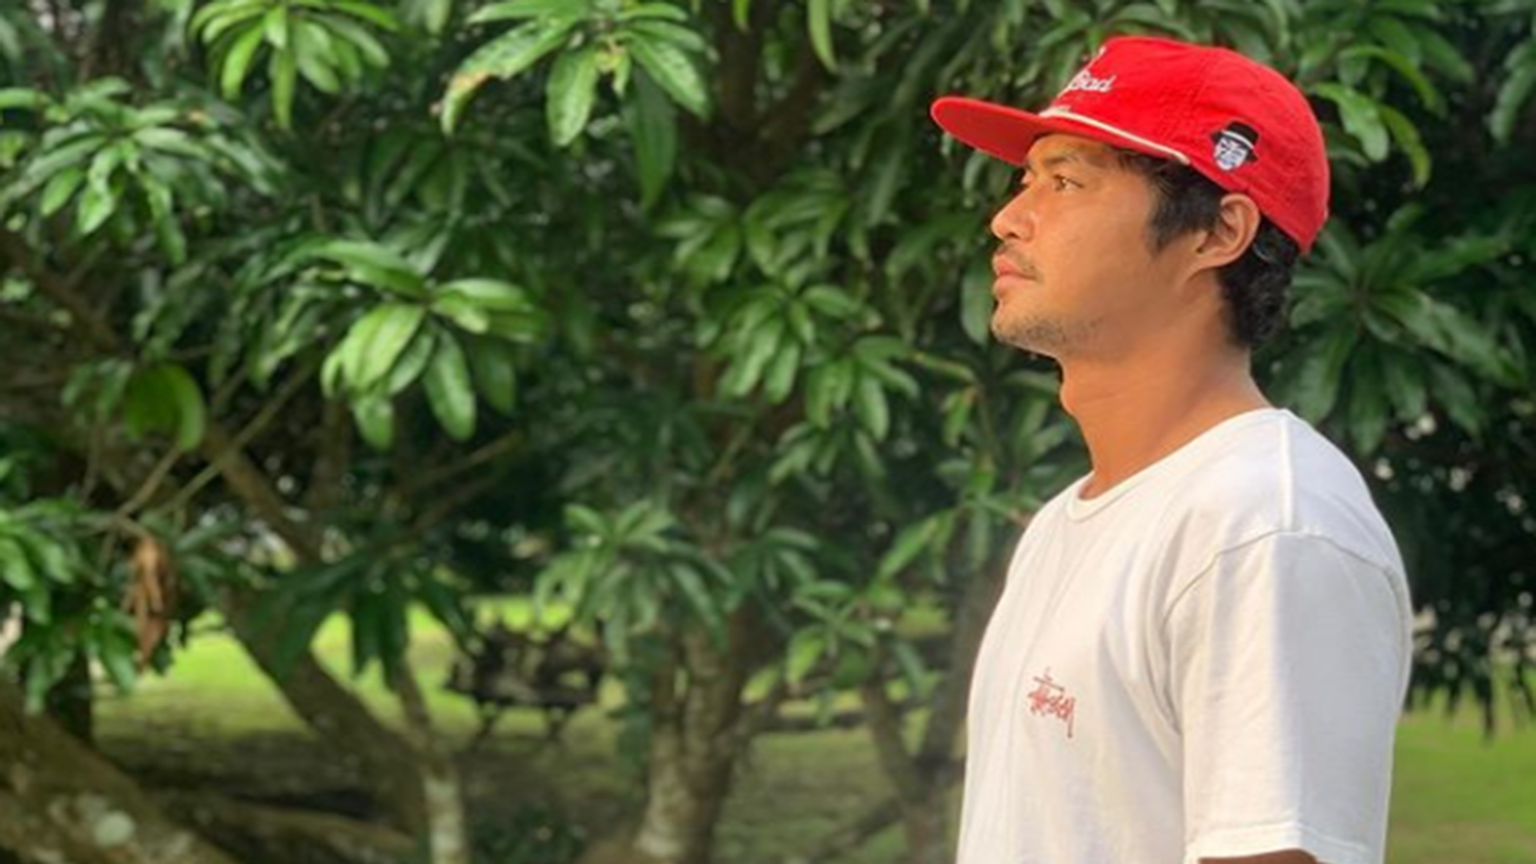 QUEZON Zanjoe Marudo explores his roots in Calauag